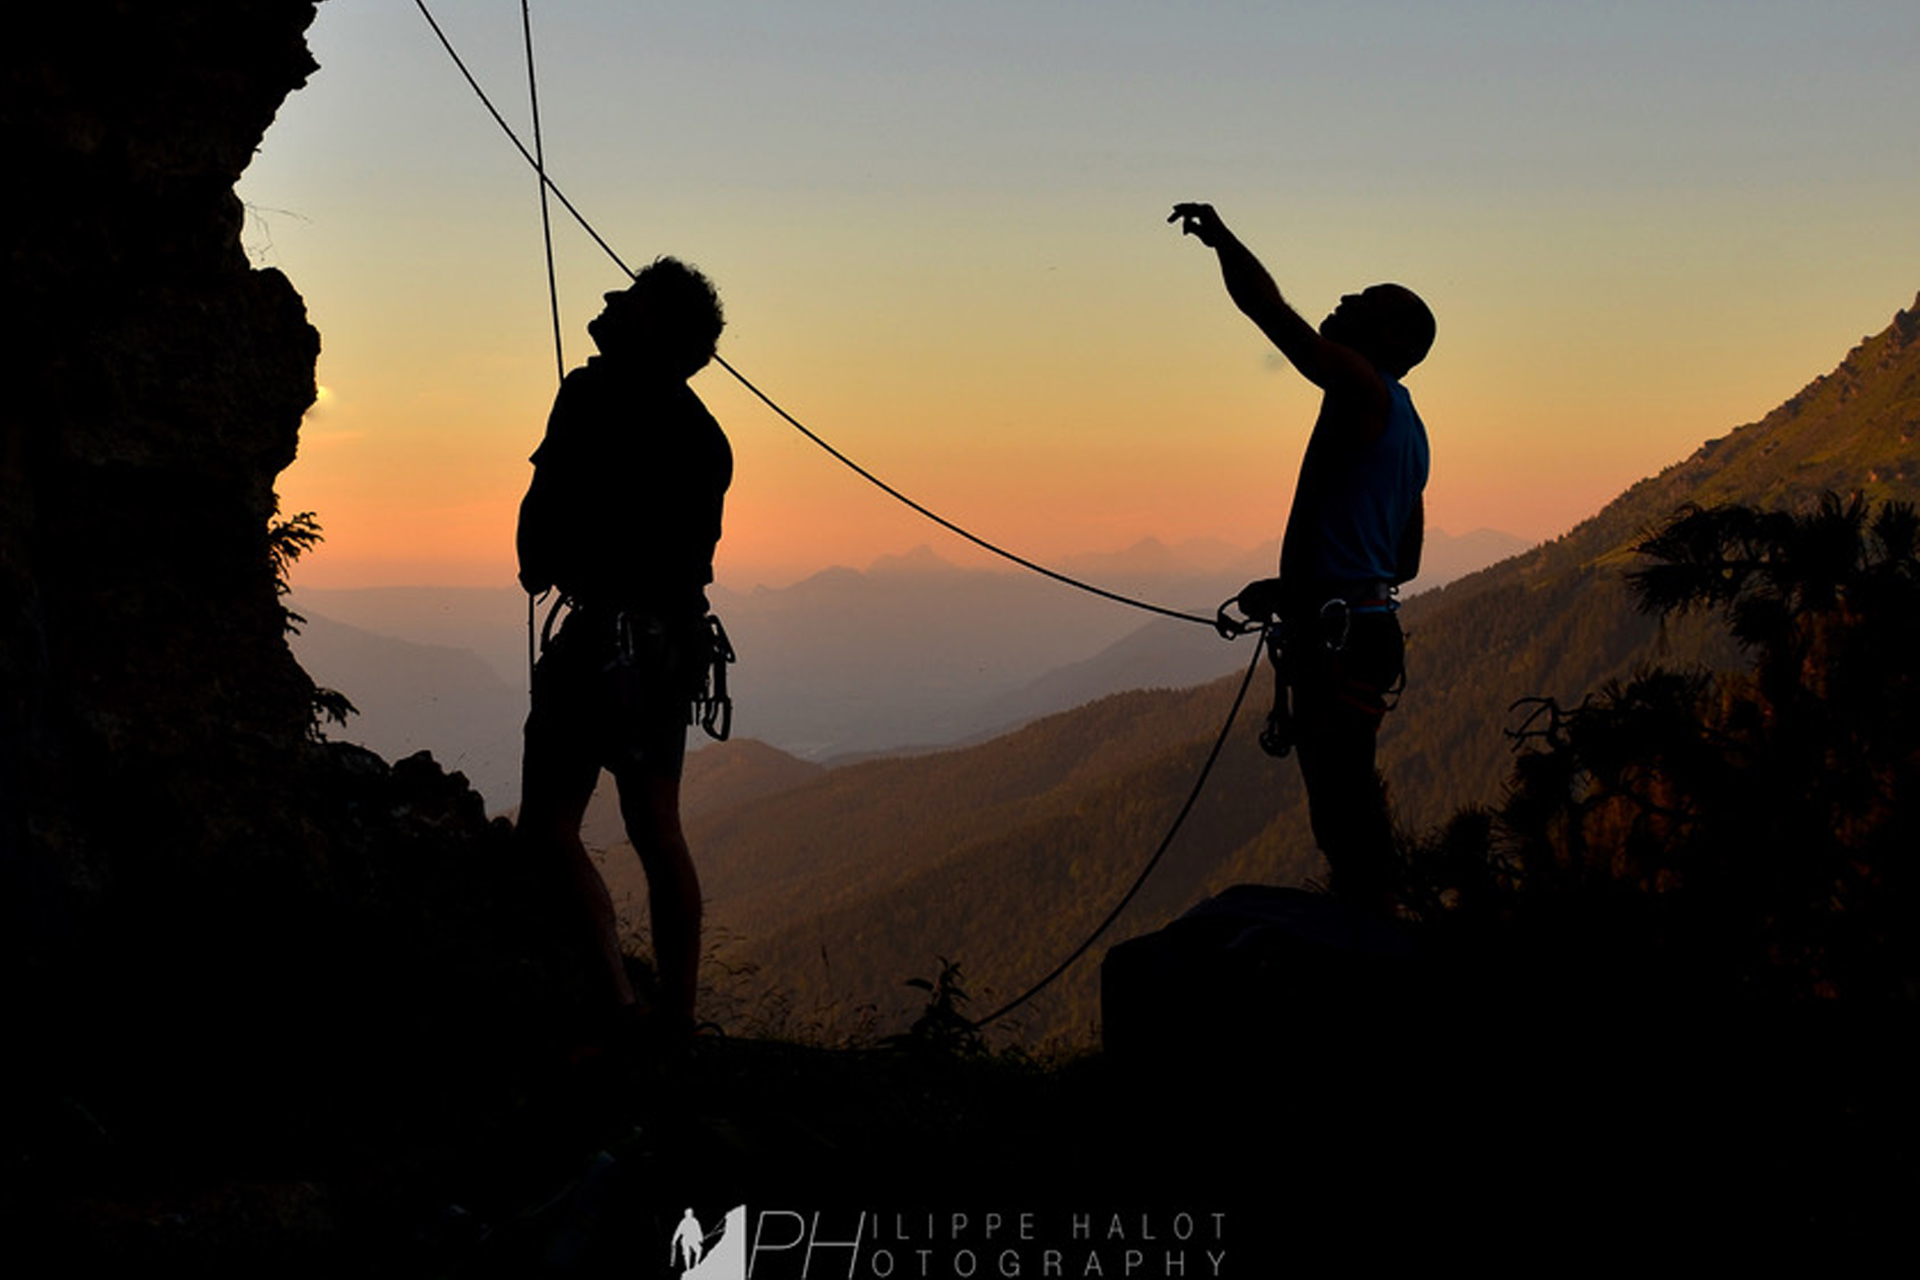 Chamrousse escalade site perfectionnement grimpe été coucher soleil station montagne grenoble belledonne isère alpes france - © Philippe Halot